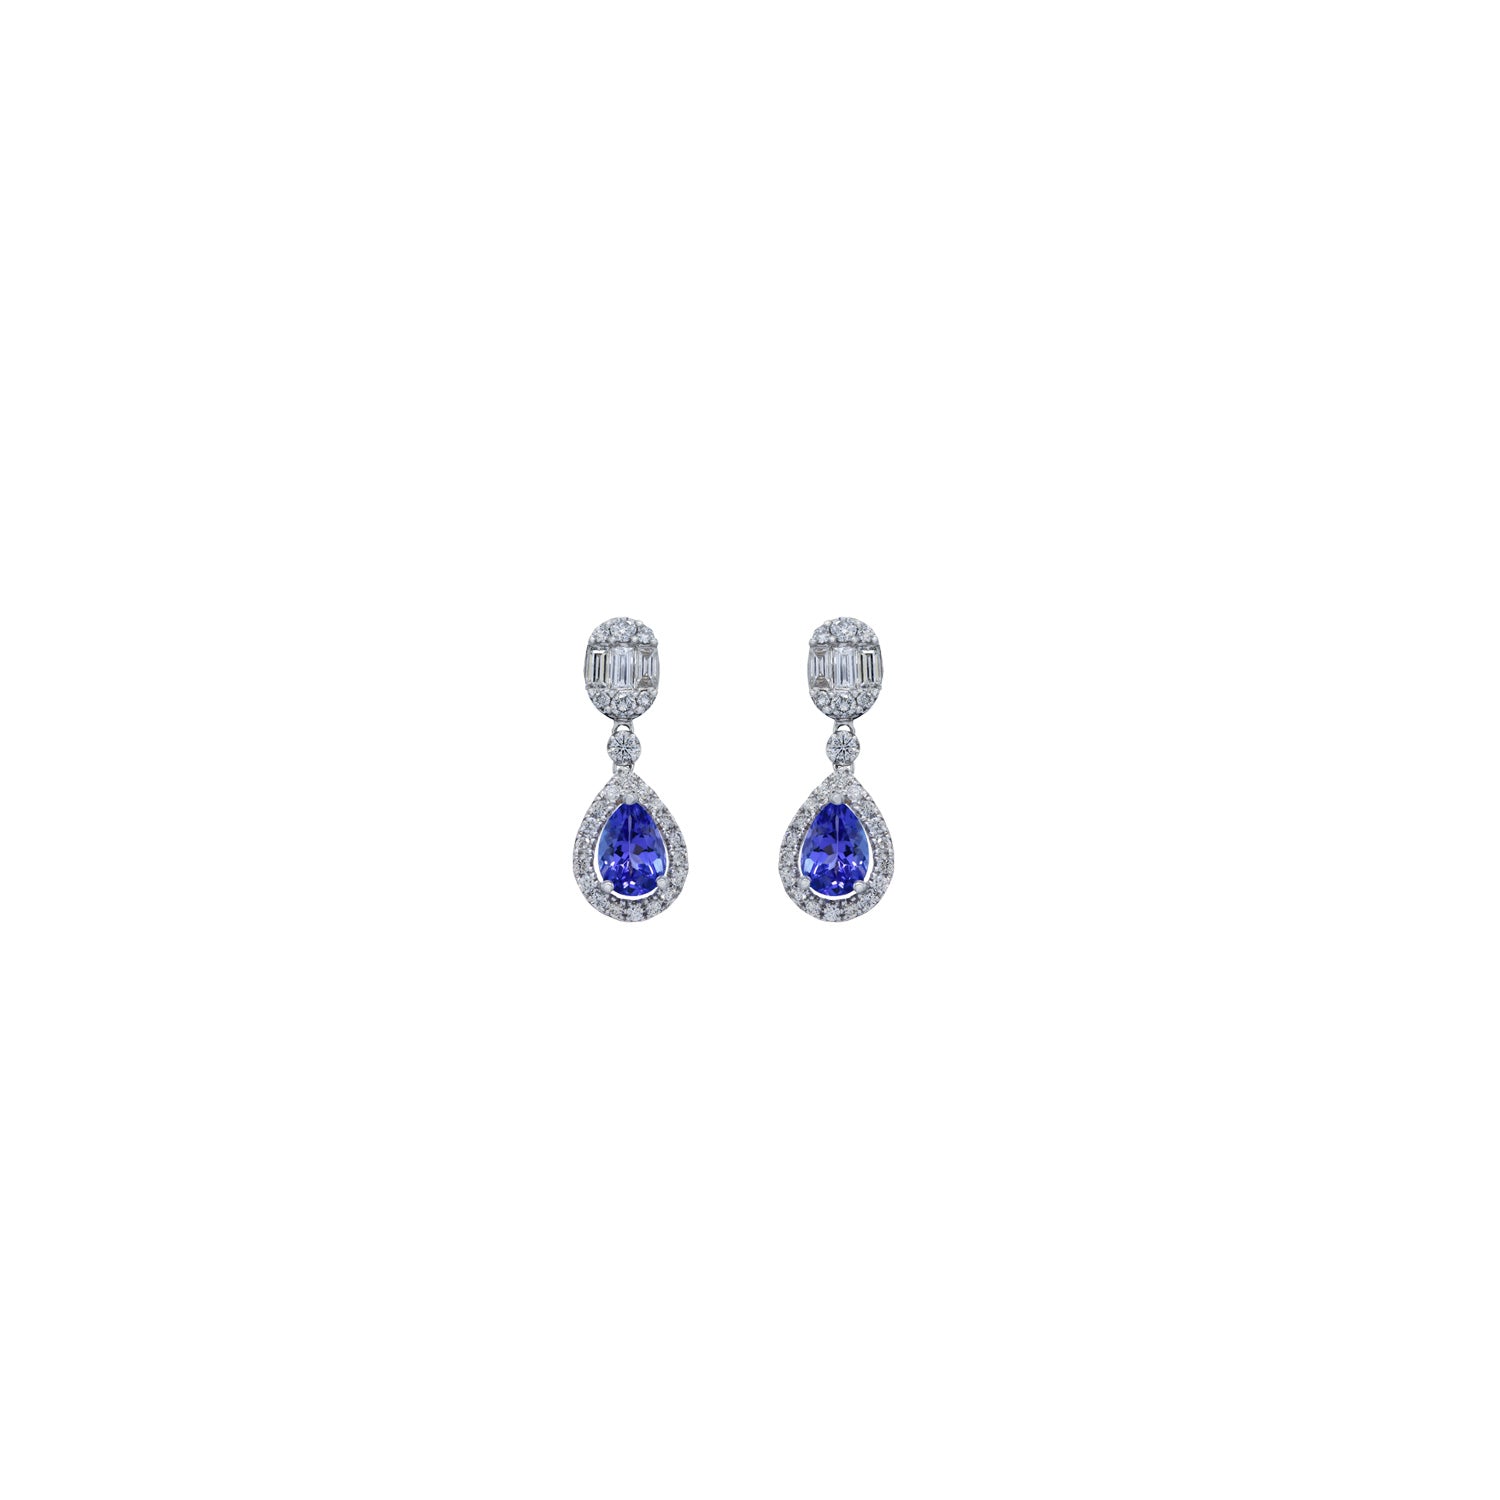 Diamond drop earrings. Tanzanite earring. Diamond and tanzanite earring. Blue stone earring.